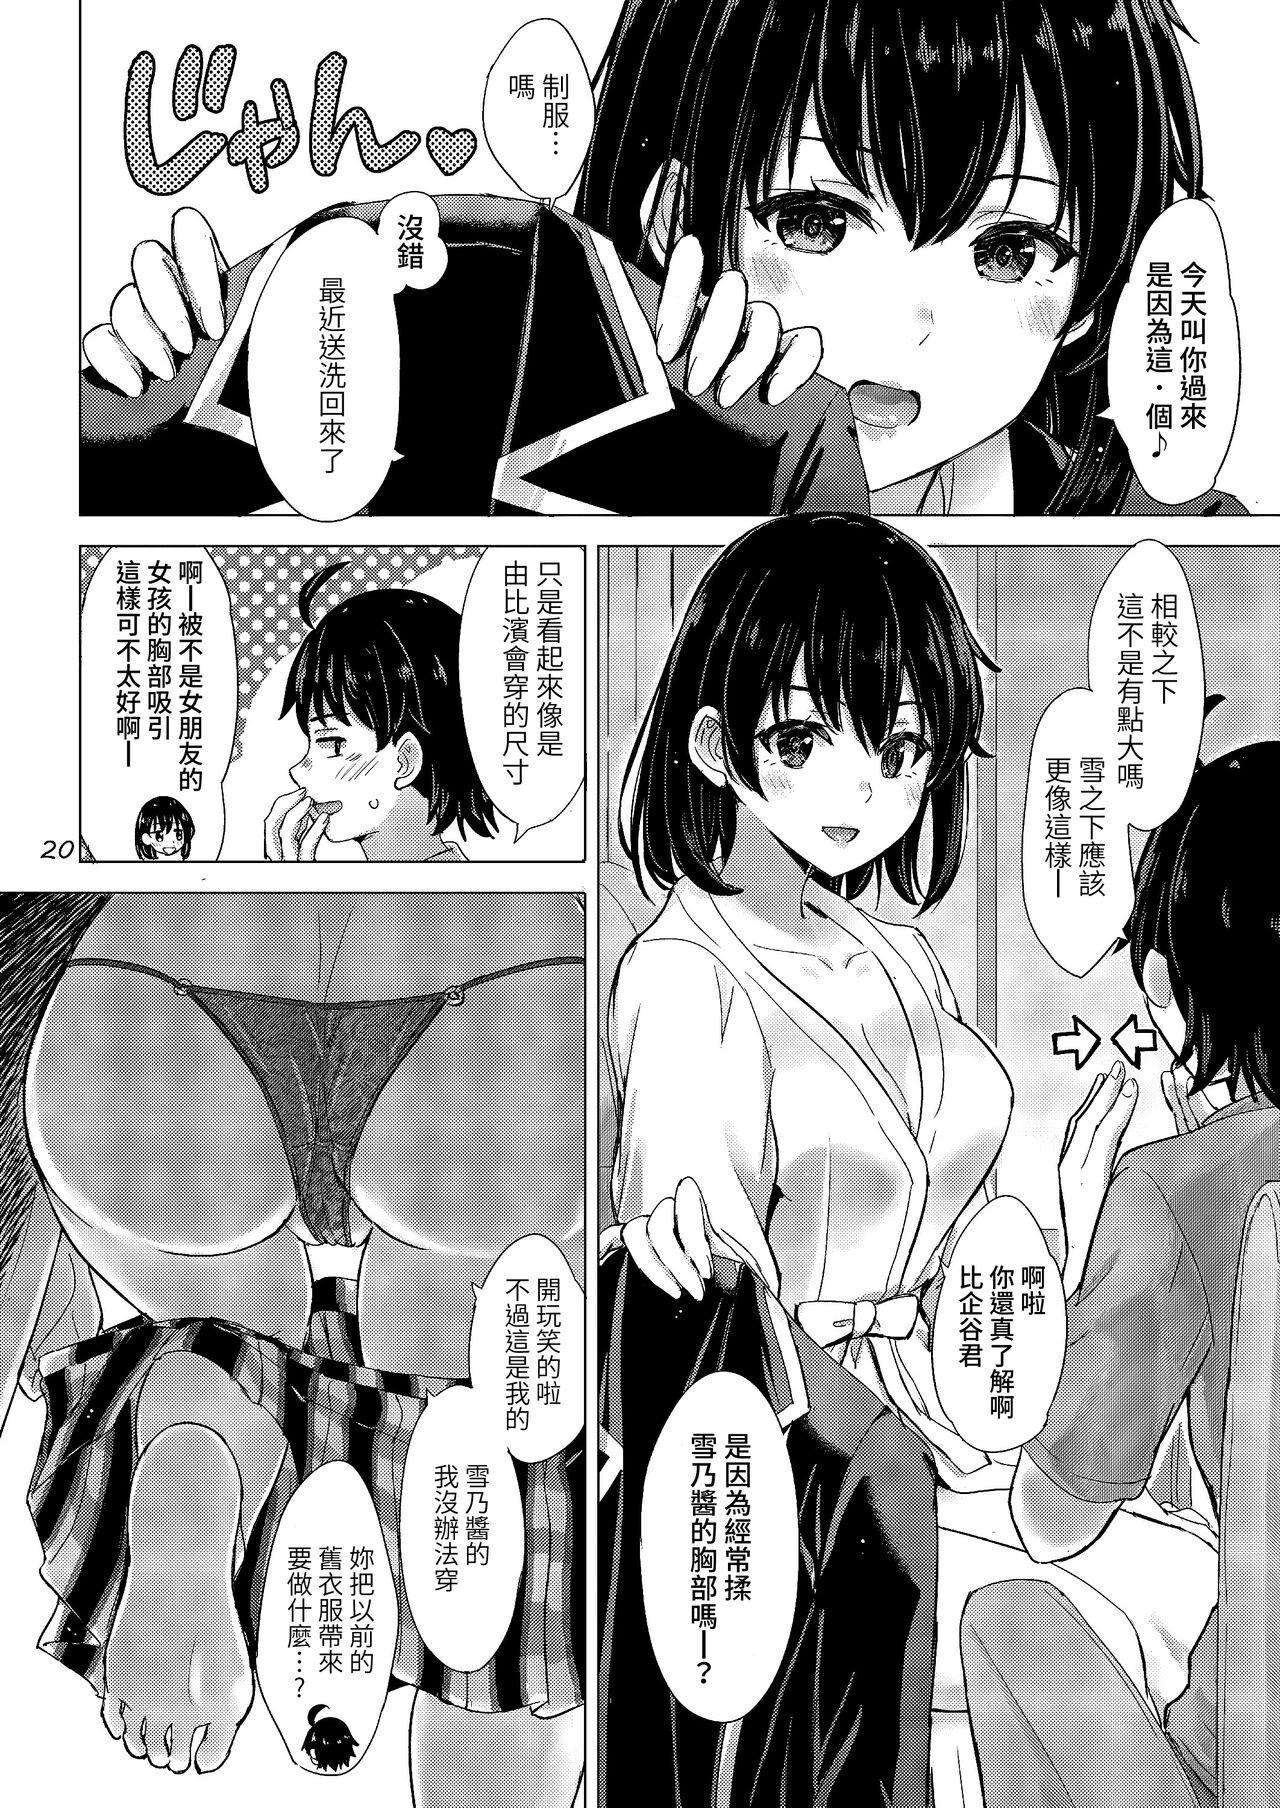 Yukinoshita Shimai to Iyarashii Futari no Himegoto. - The Yukinoshita sisters each have sex with hachiman. 19